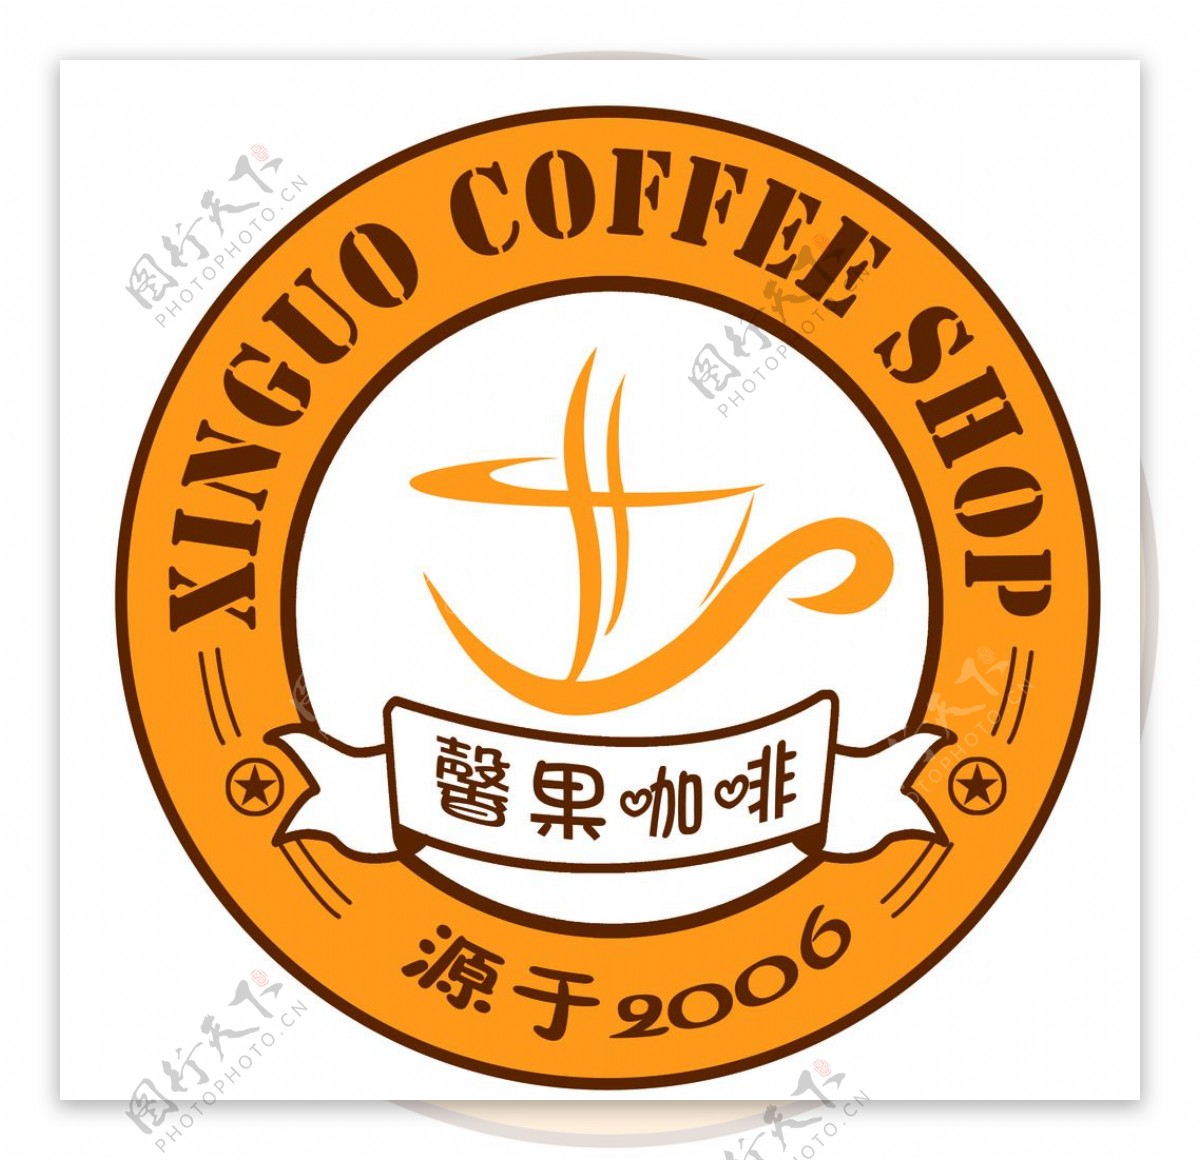 馨果咖啡标志图片